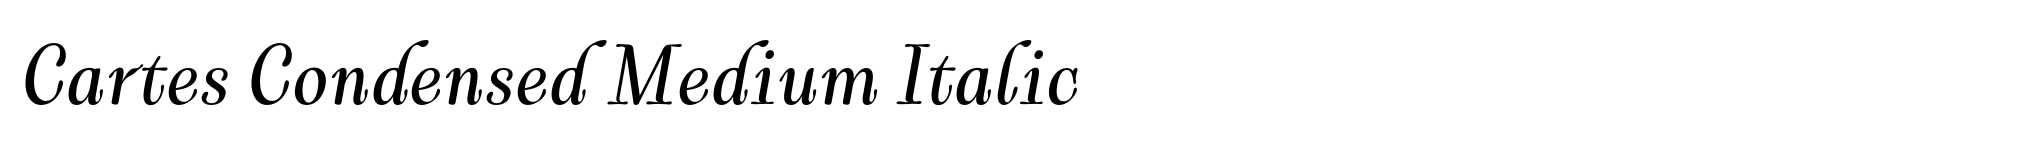 Cartes Condensed Medium Italic image